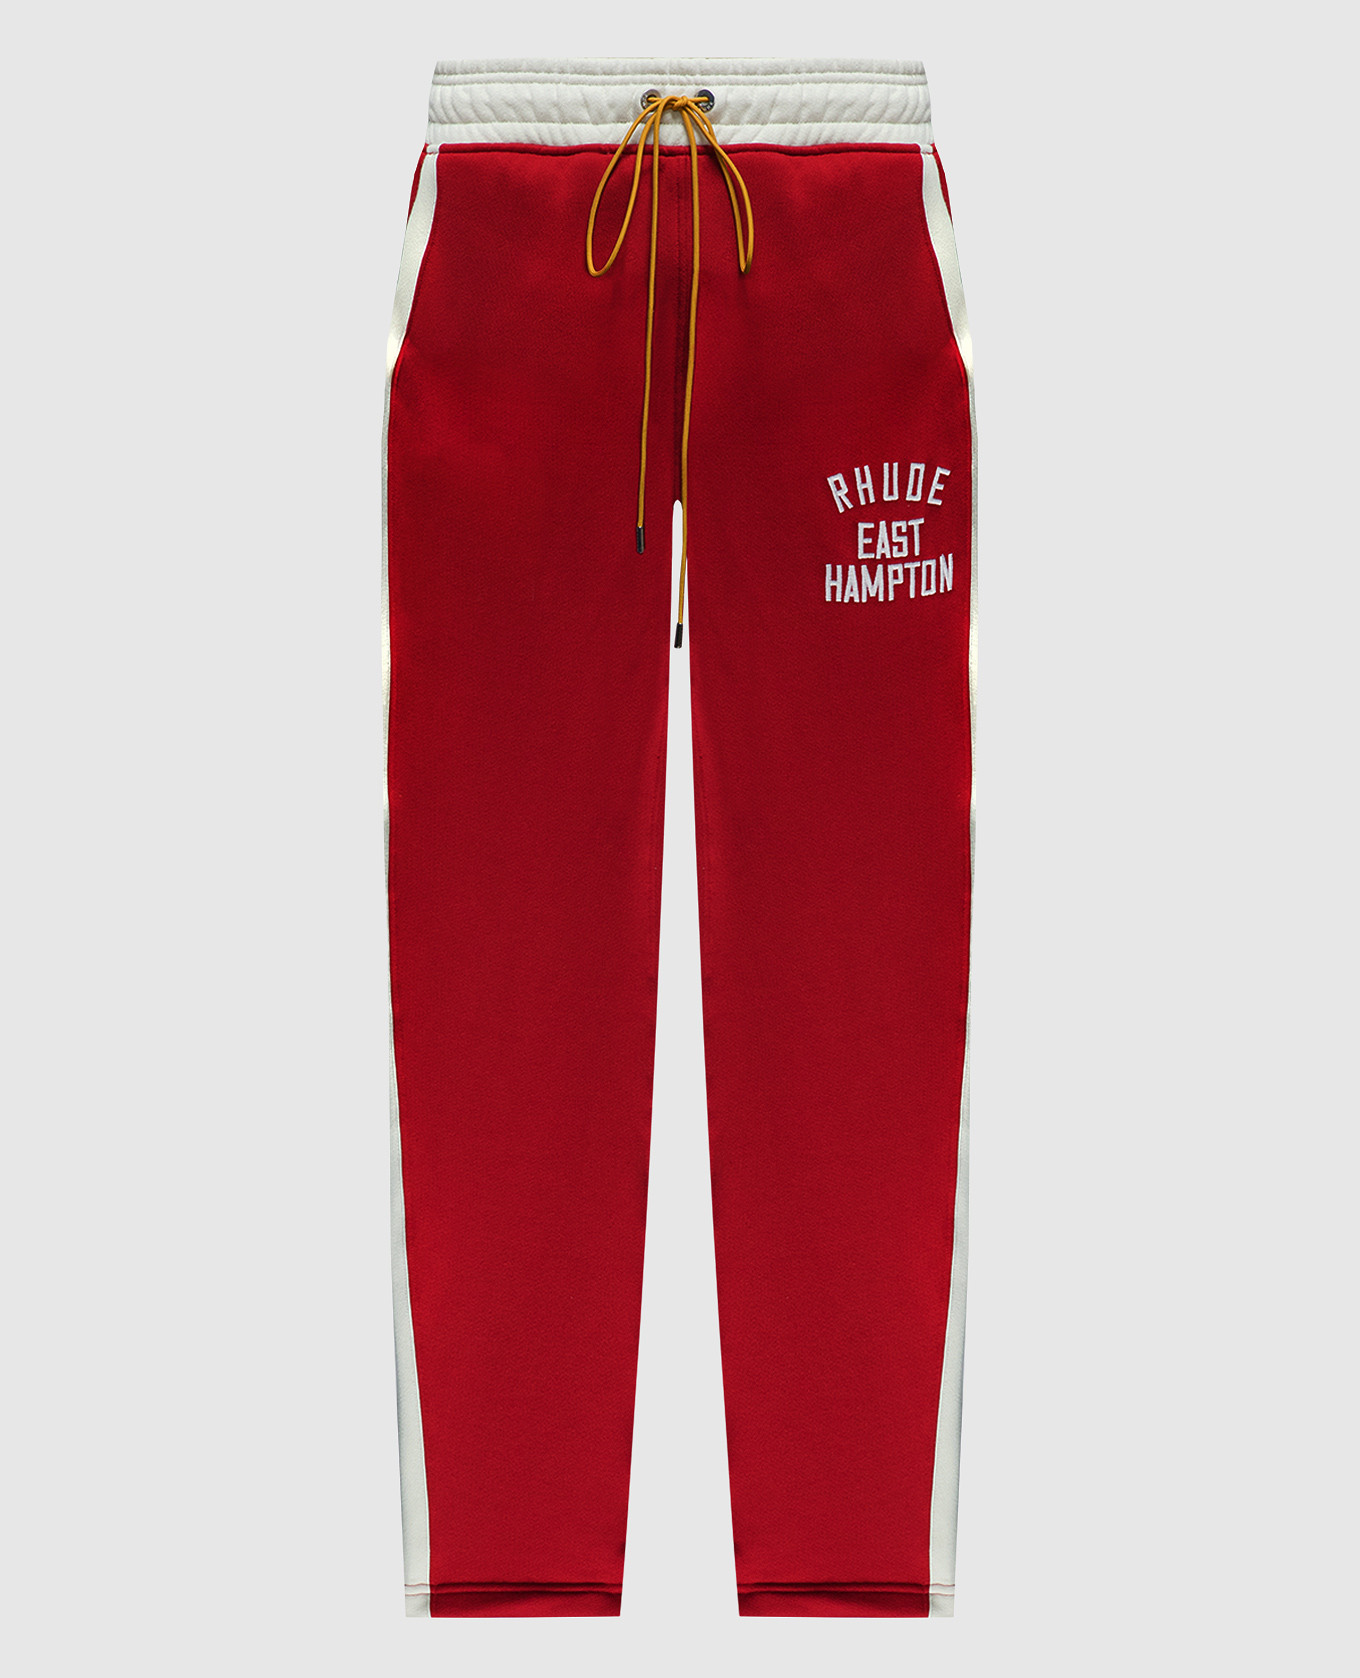 Красные спортивные штаны East Hampton с вышивкой логотипа.